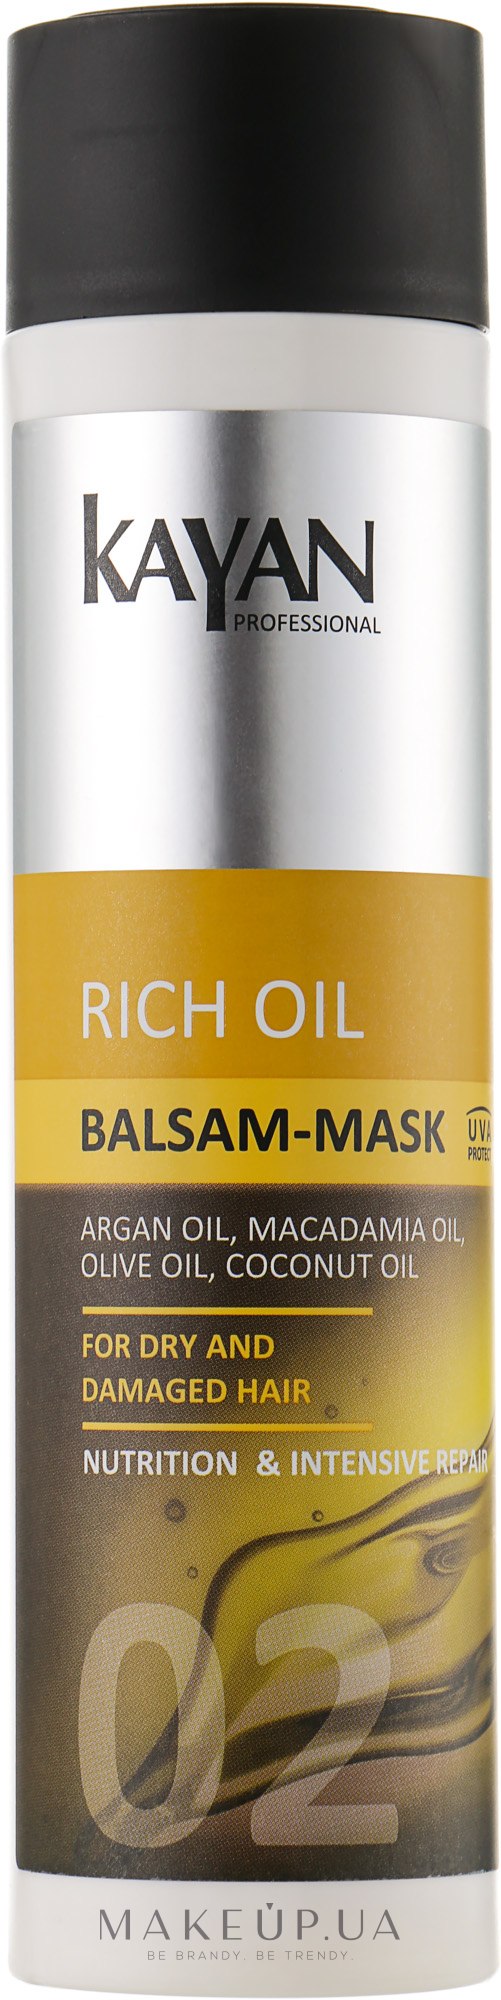 Бальзам-маска для сухих и поврежденных волос - Kayan Professional Rich Oil Balsam-Mask  — фото 250ml